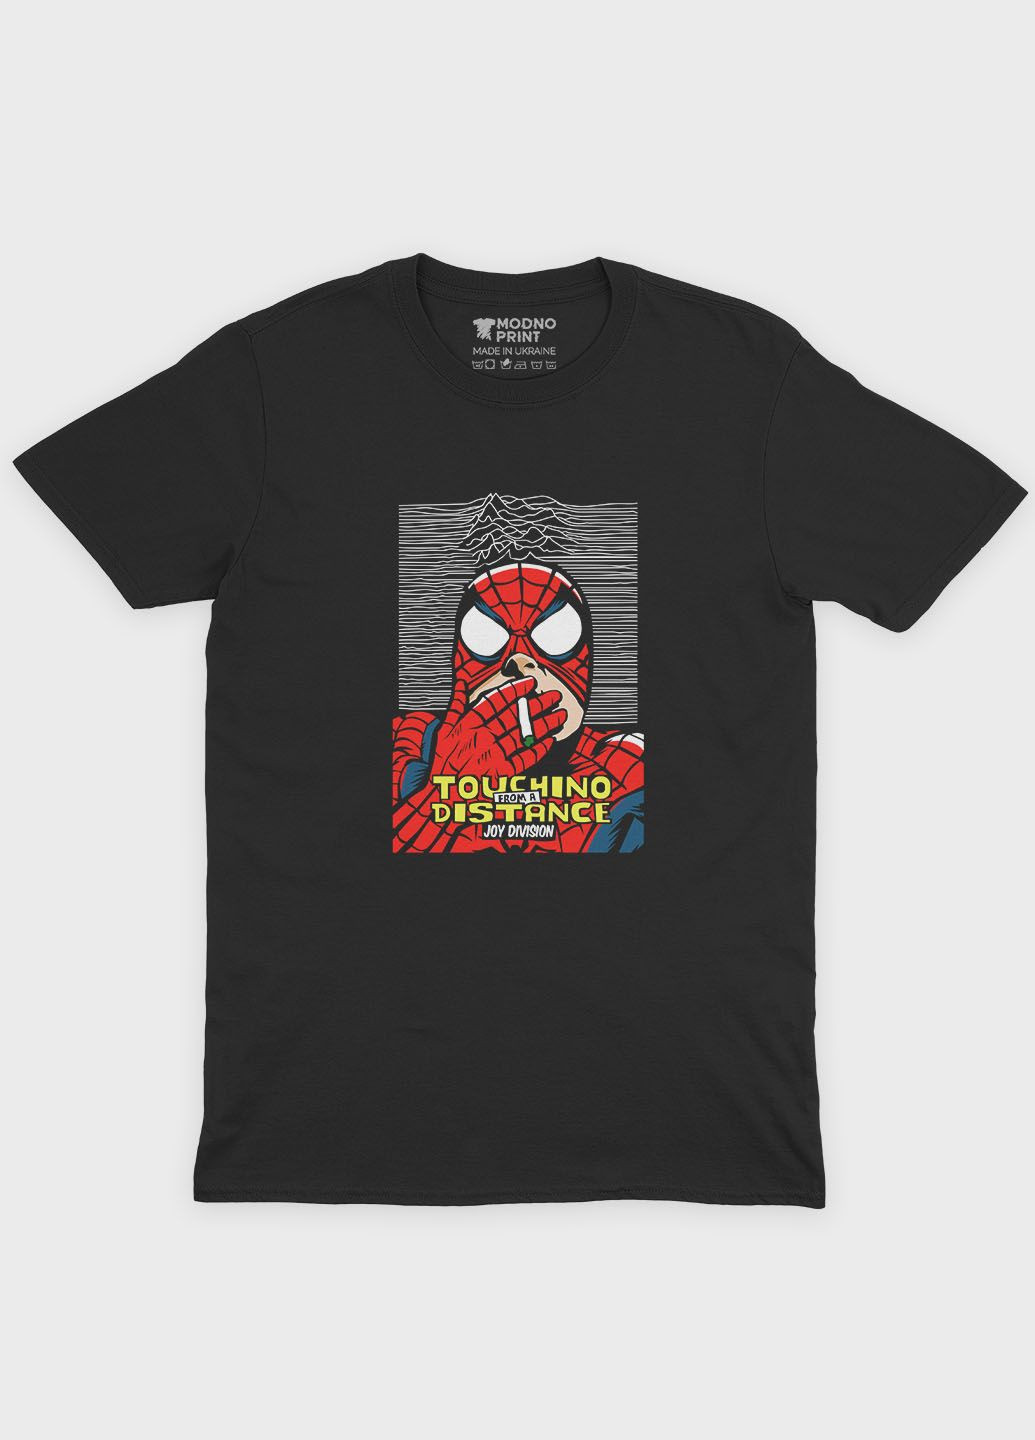 Черная демисезонная футболка для девочки с принтом супергероя - человек-паук (ts001-1-gl-006-014-045-g) Modno